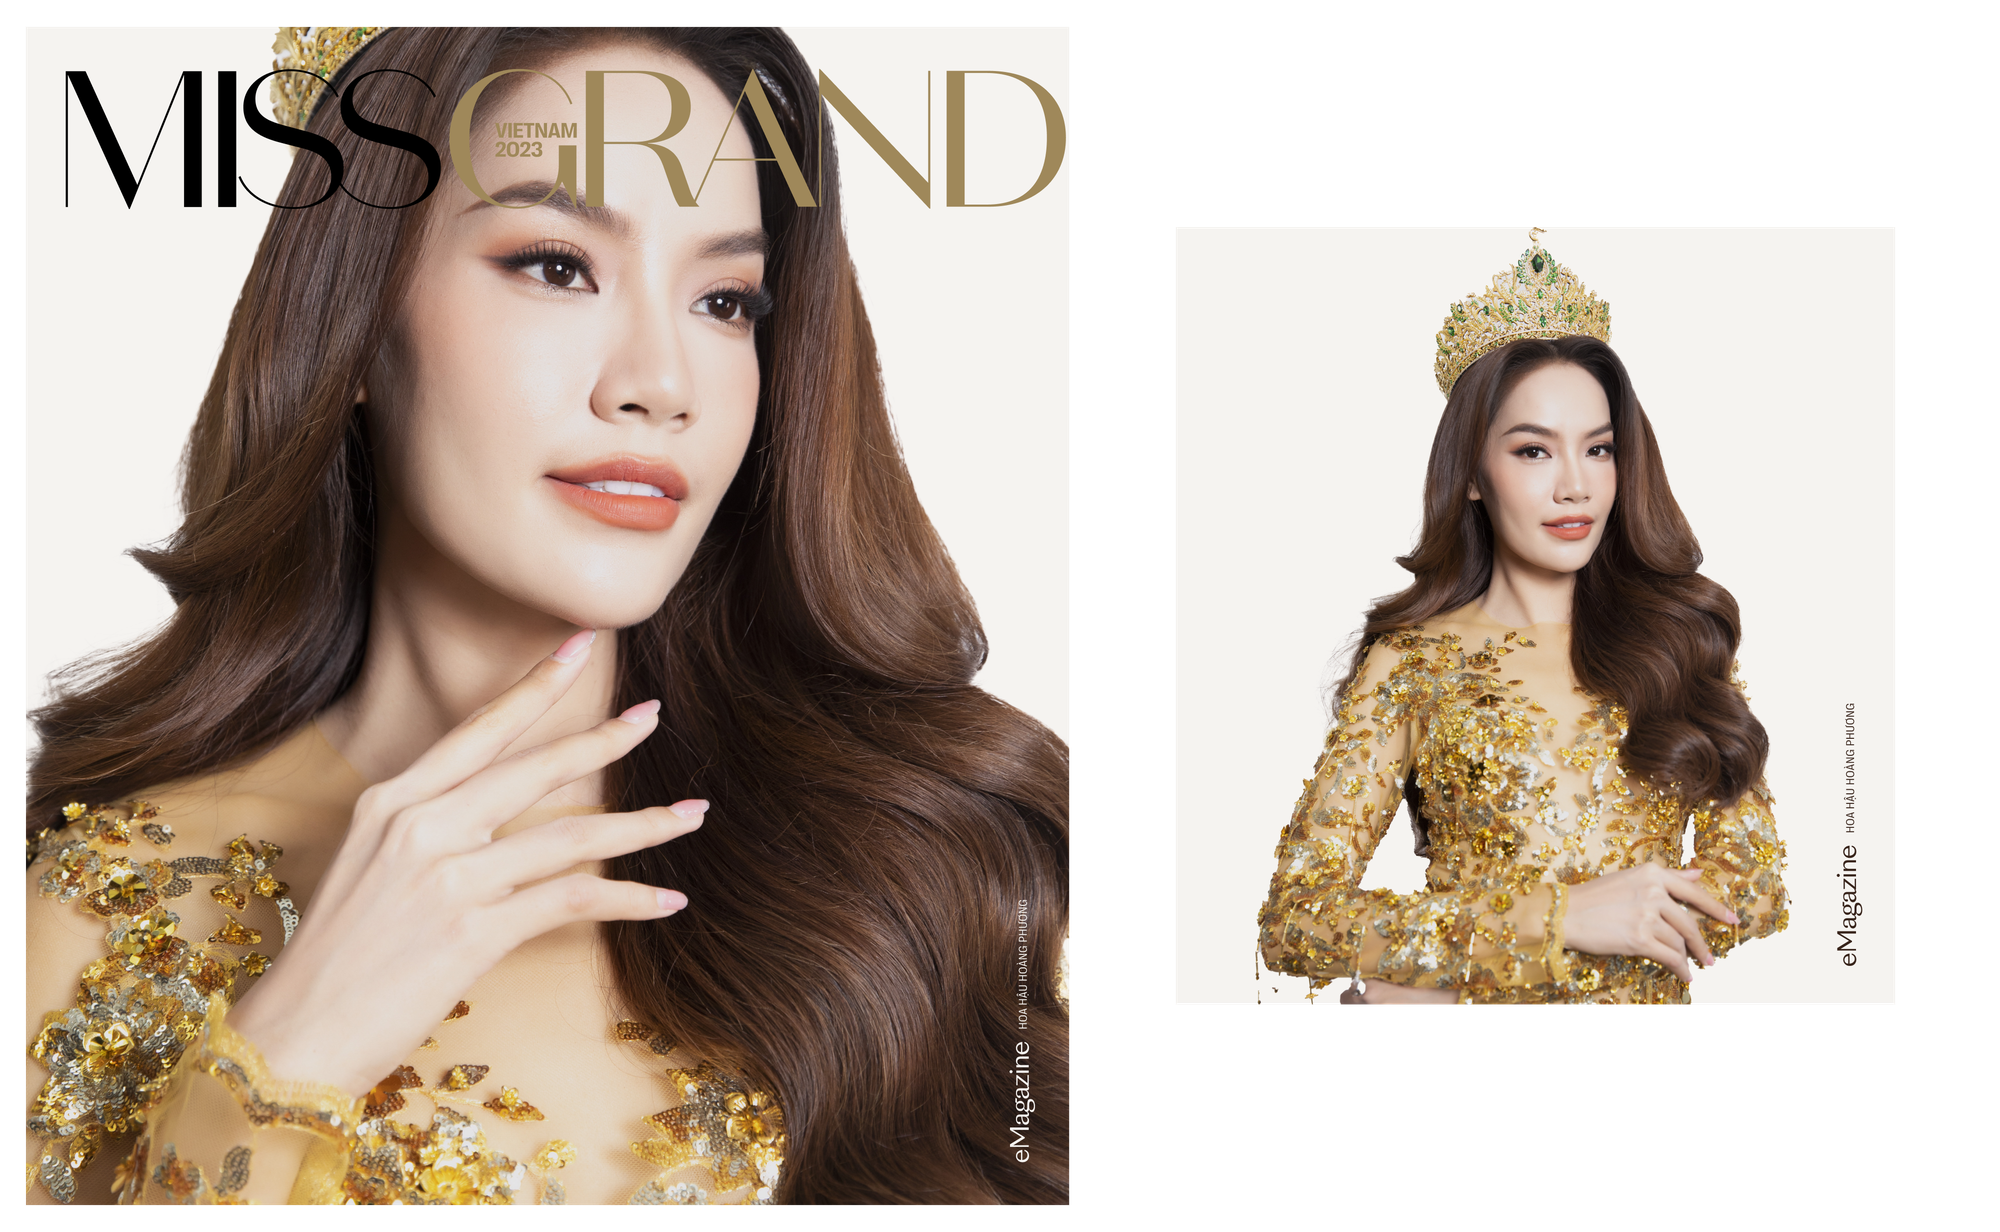 Lê Hoàng Phương phải trở thành một đại diện đầy tự hào tại Miss Grand International chứ không có sự tiếc nuối nào cả! - Ảnh 4.